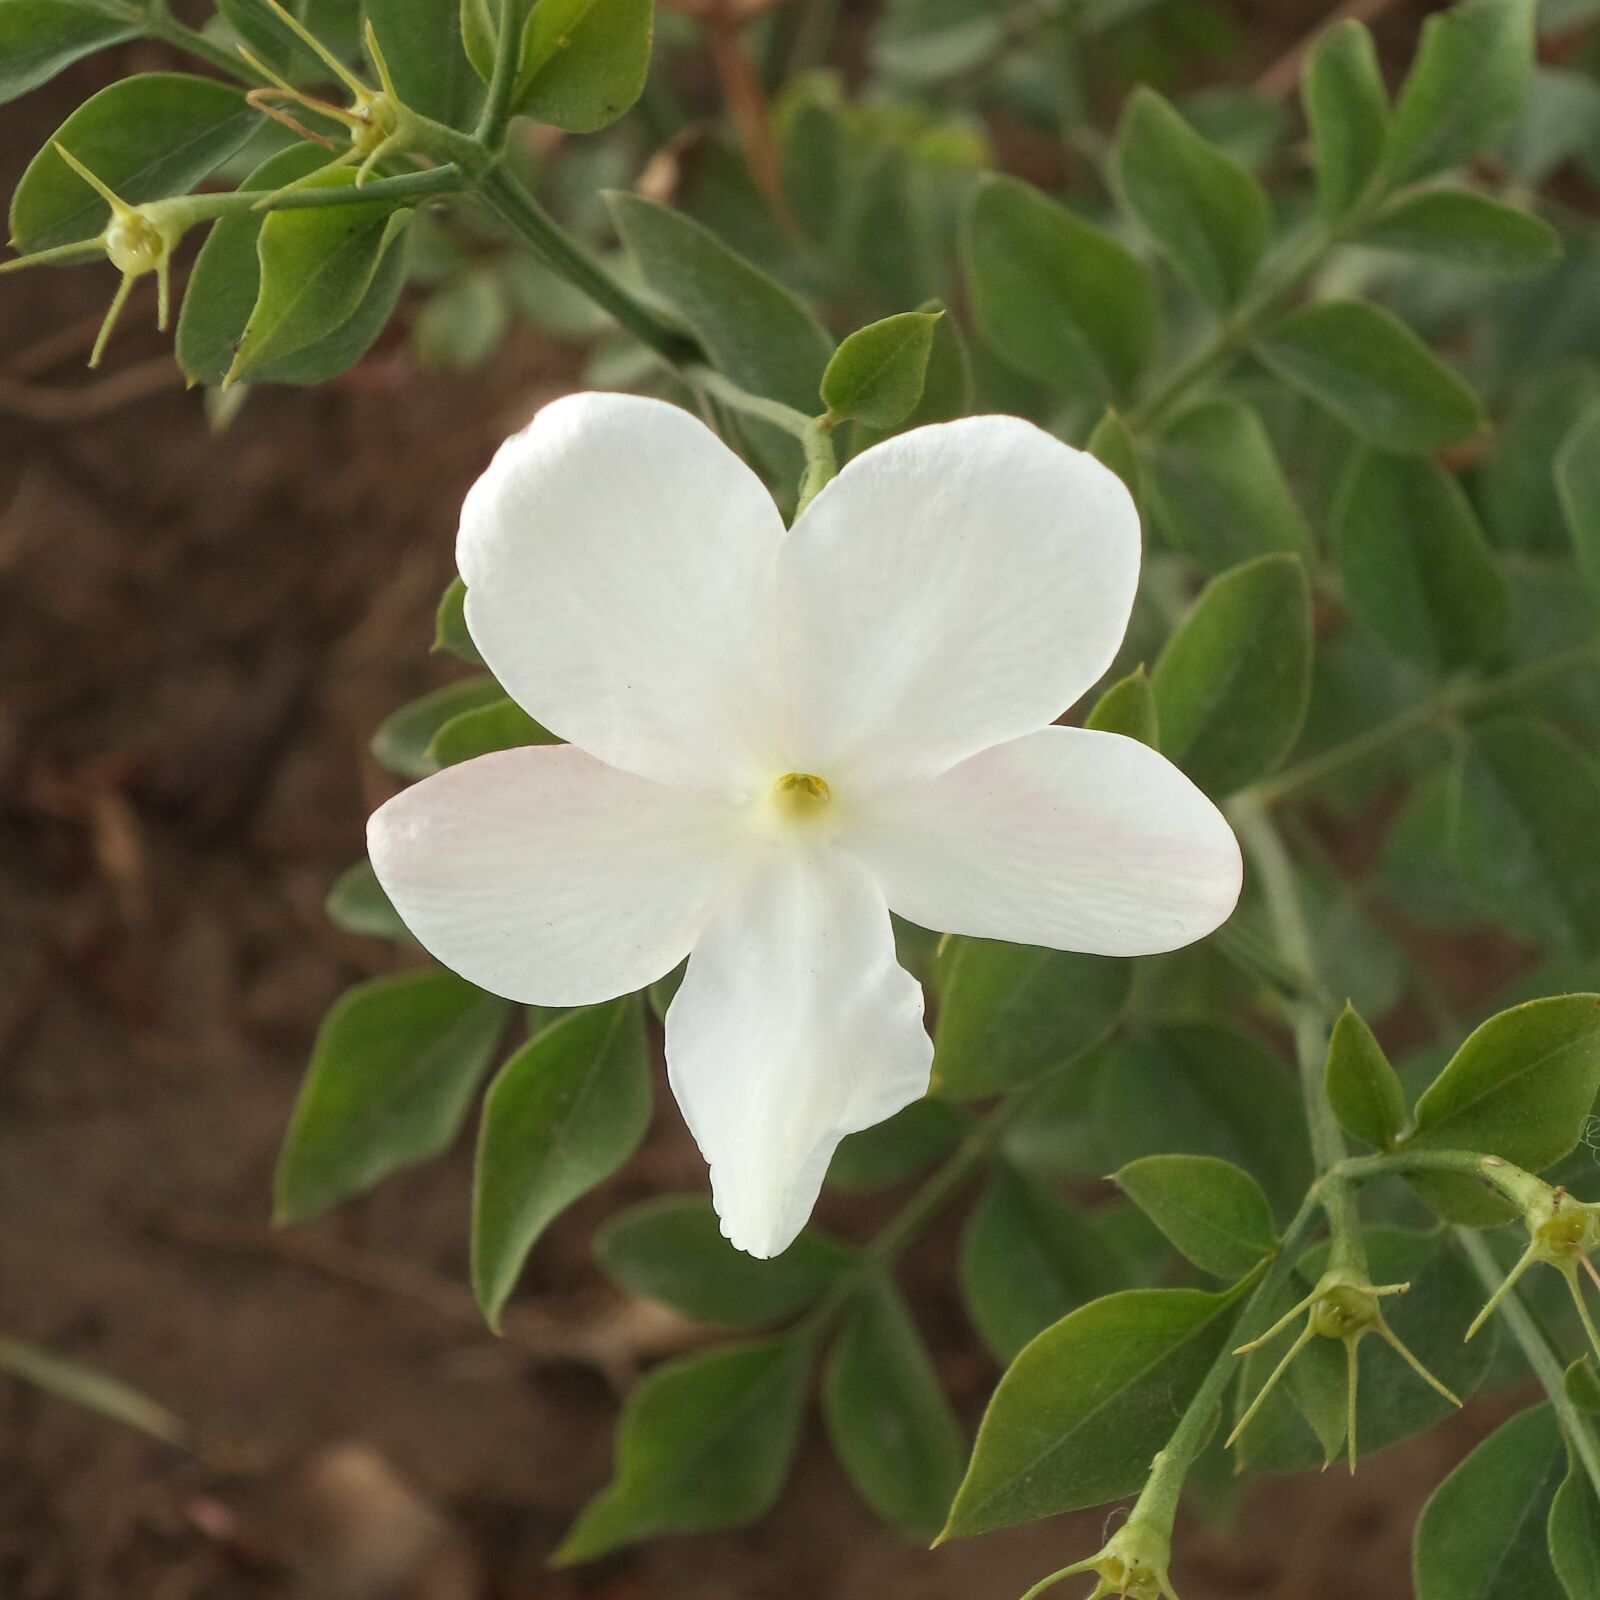 Sony Cyber-shot DSC-W710 sample photo. Jasmine, flower, foliage photography